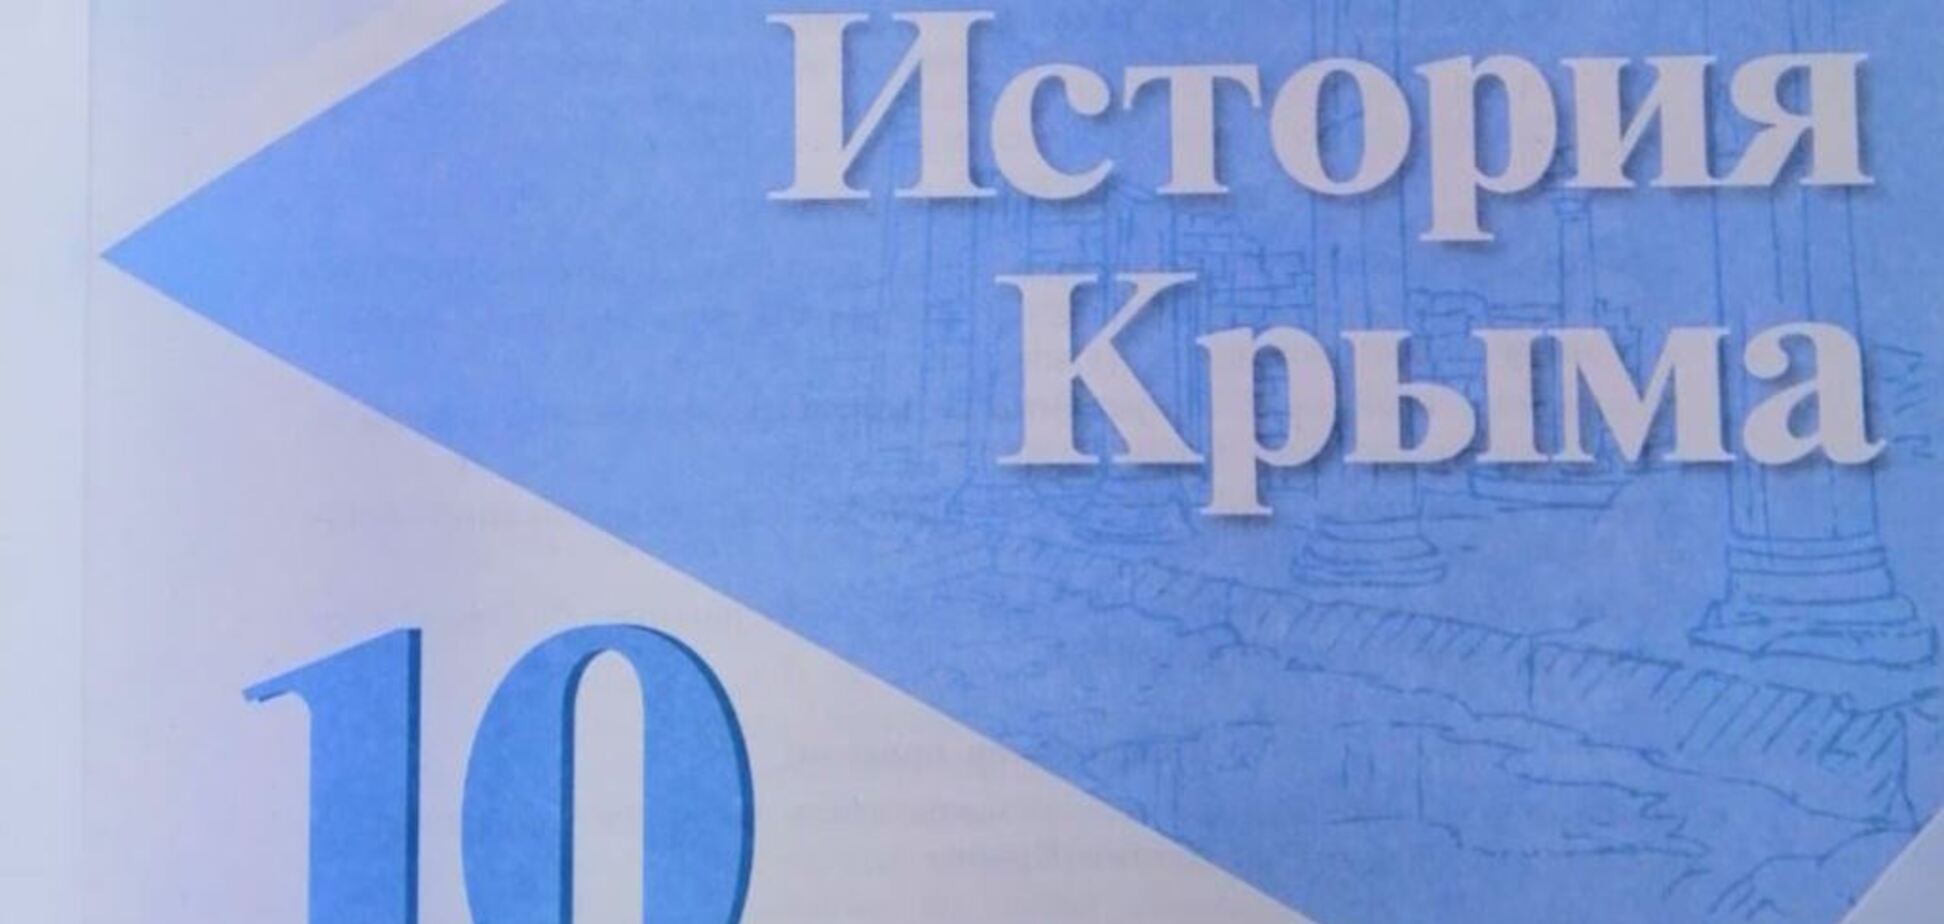 Вырвали страницы: скандал с учебниками по истории Крыма получил продолжение